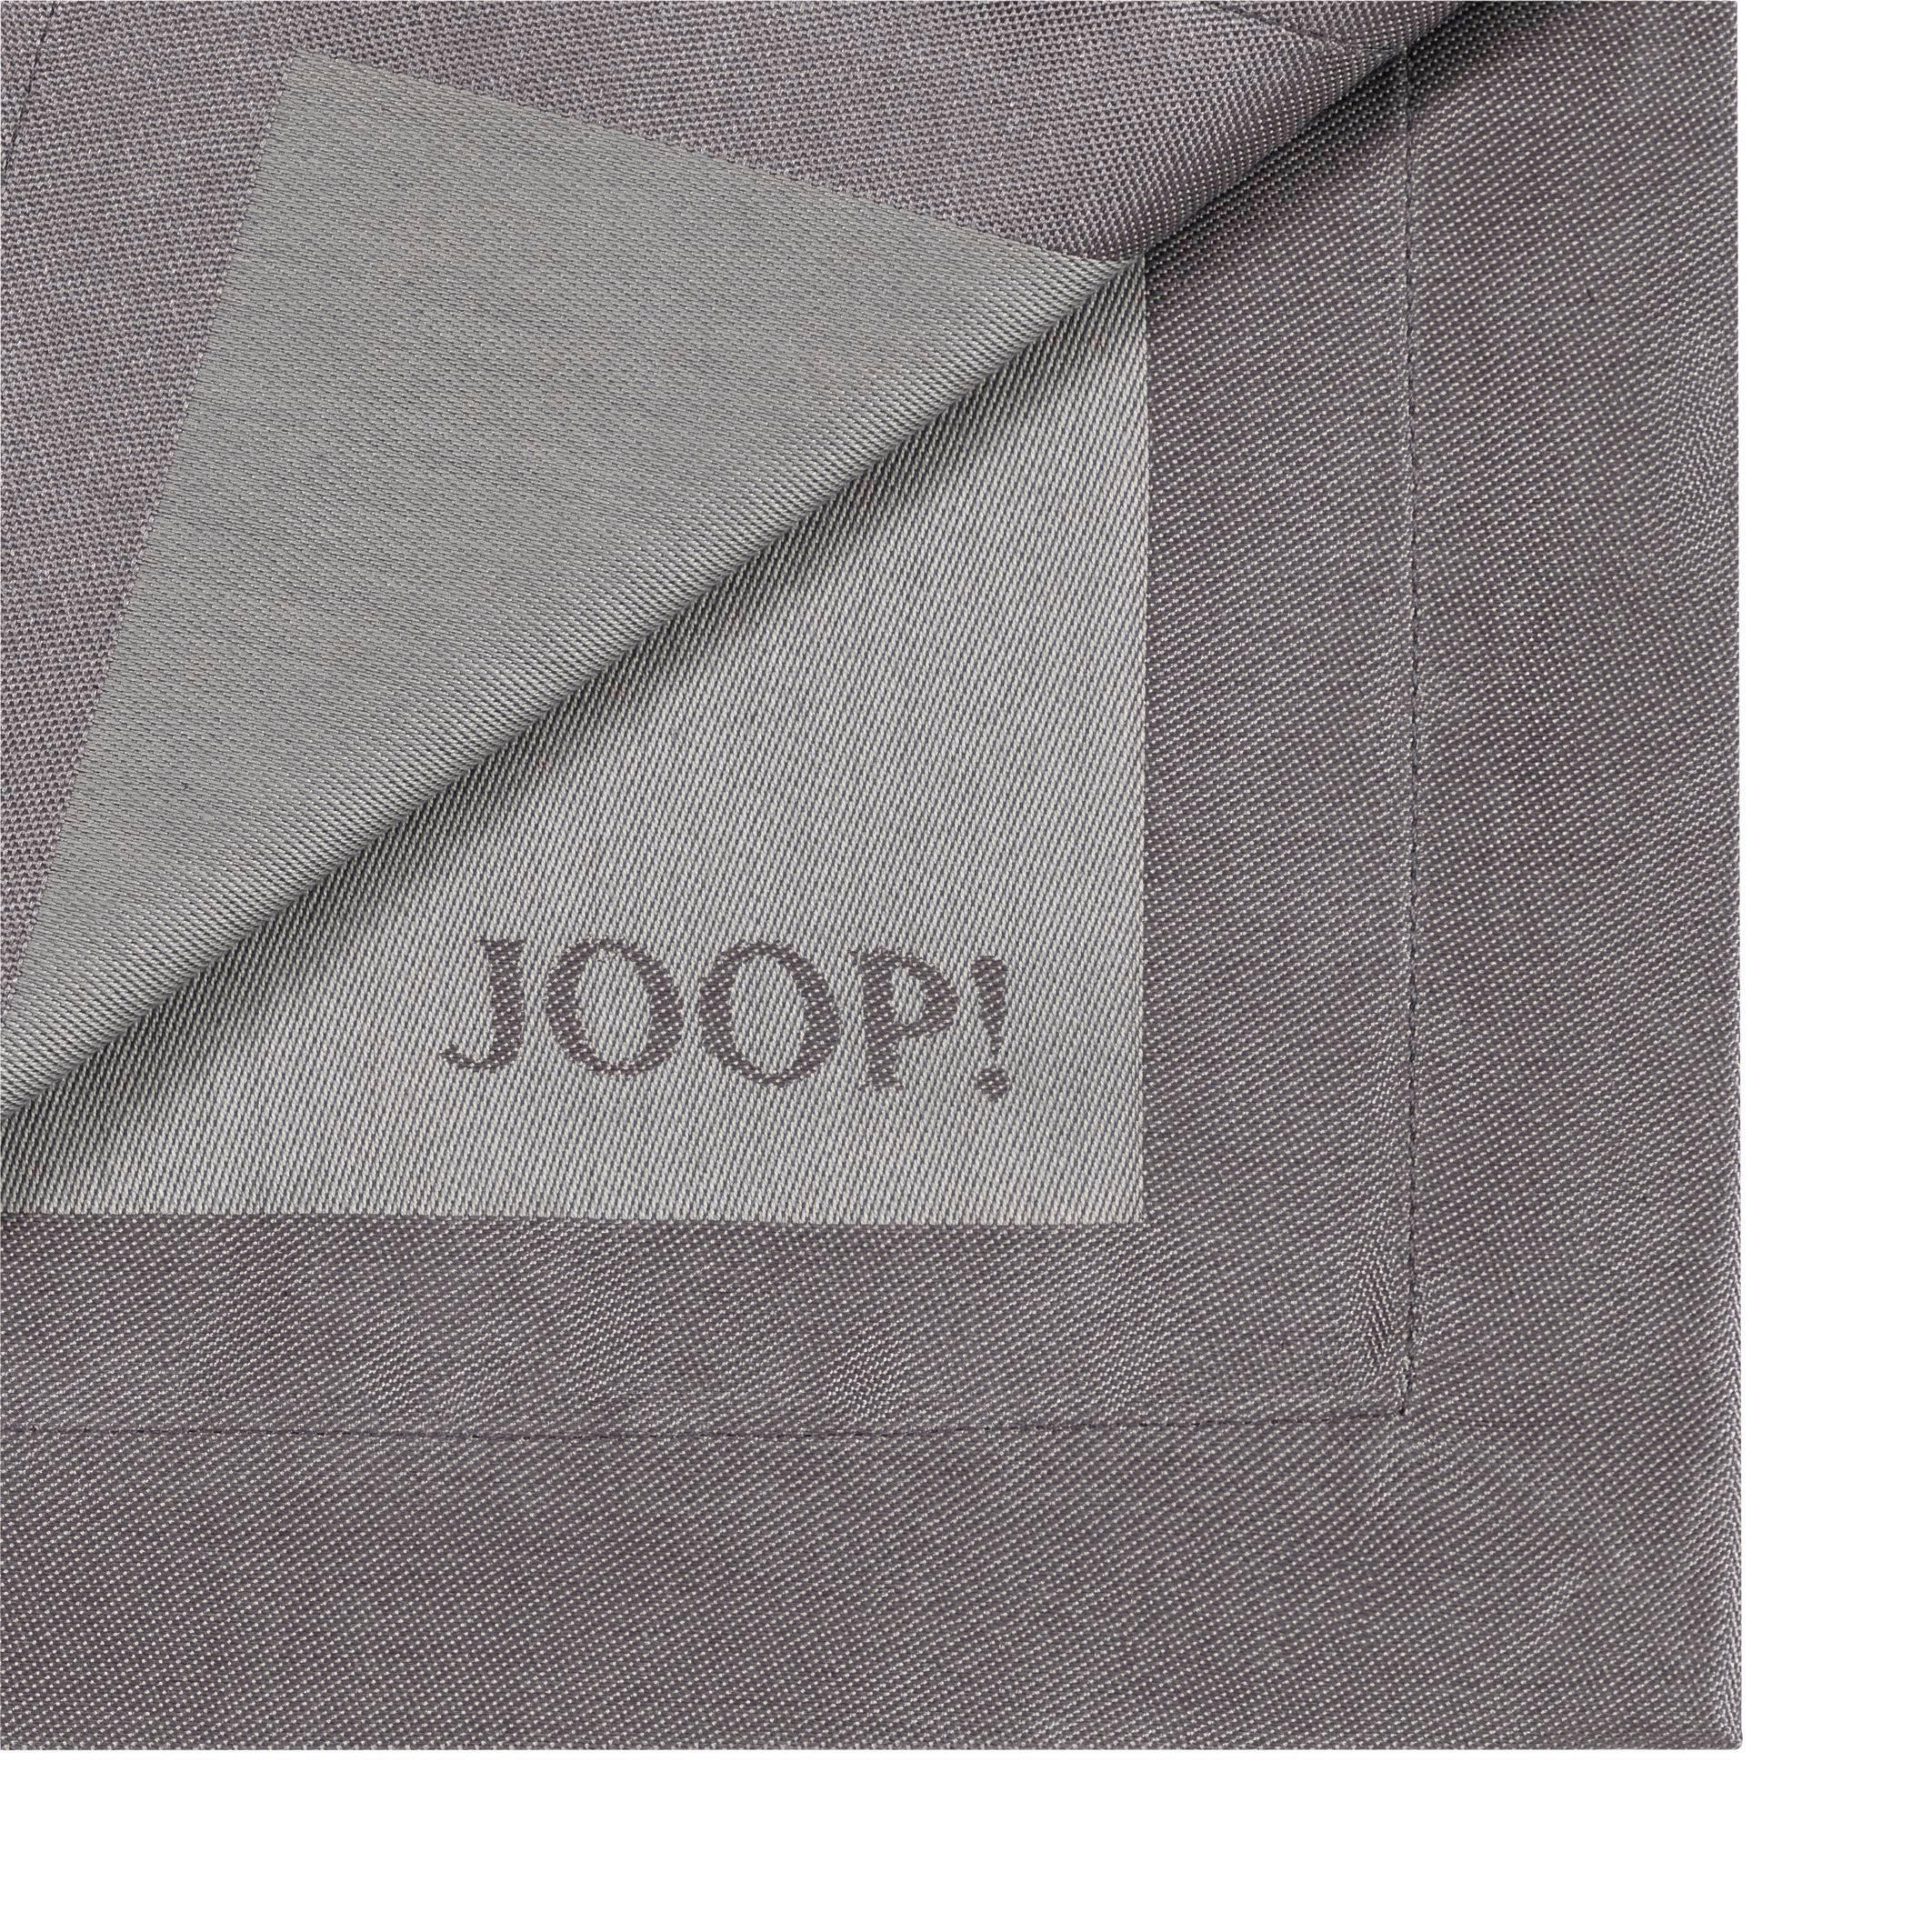 Joop! TISCHSET 2ER-SET Textil Graphitfarben 36/48 cm jetzt nur online ➤